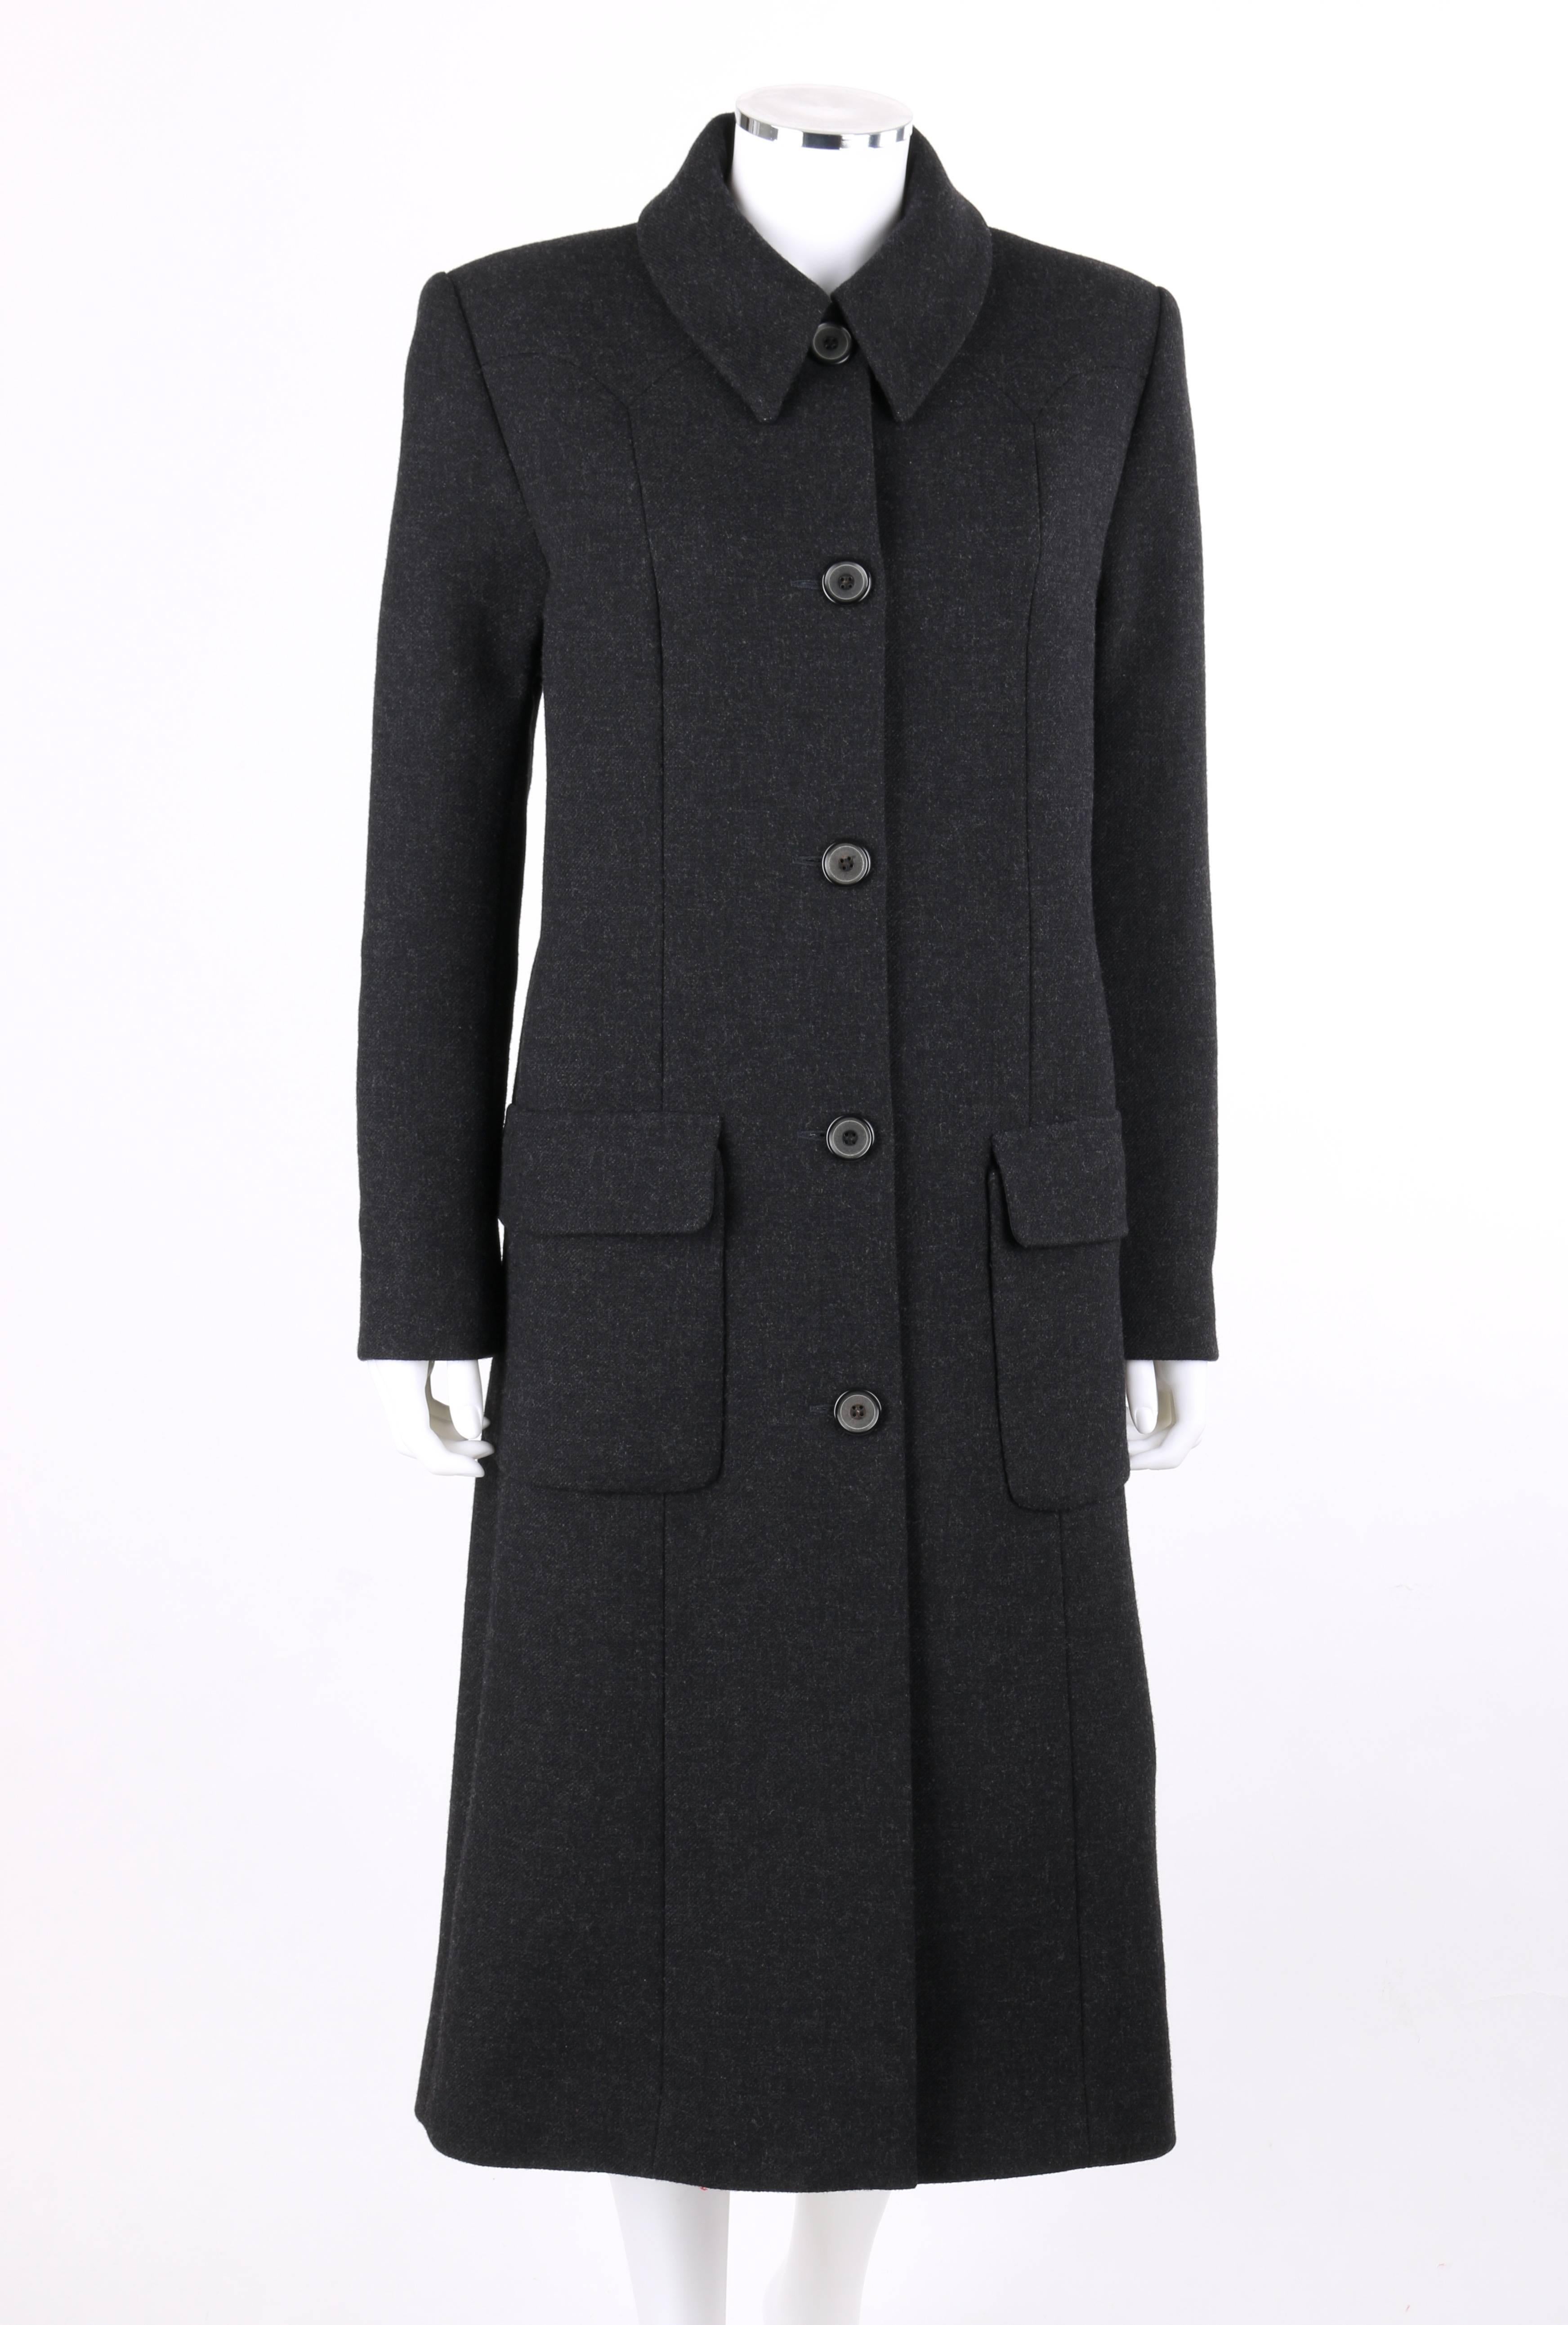 Manteau Givenchy Couture automne/hiver 1998 en laine gris anthracite conçu par Alexander McQueen. Manches longues. Collier de bal. Cinq boutons centraux sur le devant et un bouton-pression sur le dessus. Empiècement frontal en pointe. Deux grandes